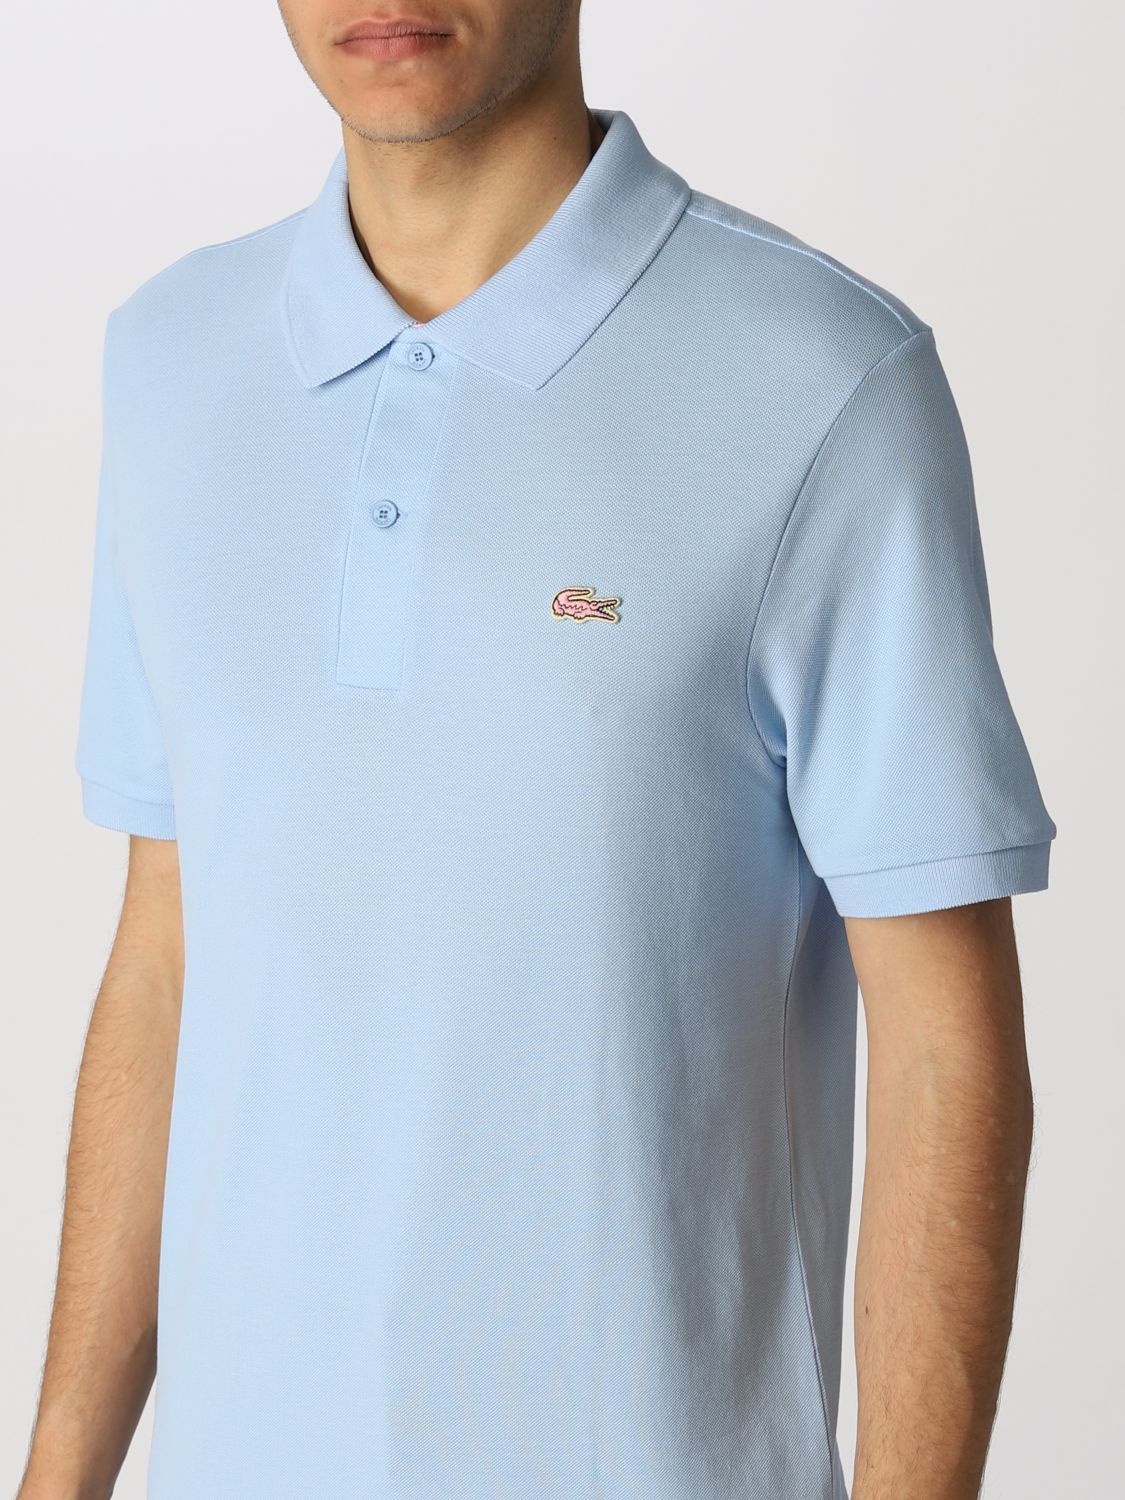 Polo shirt Lacoste L!Ve: Polo shirt men Lacoste L!ve gnawed blue 3